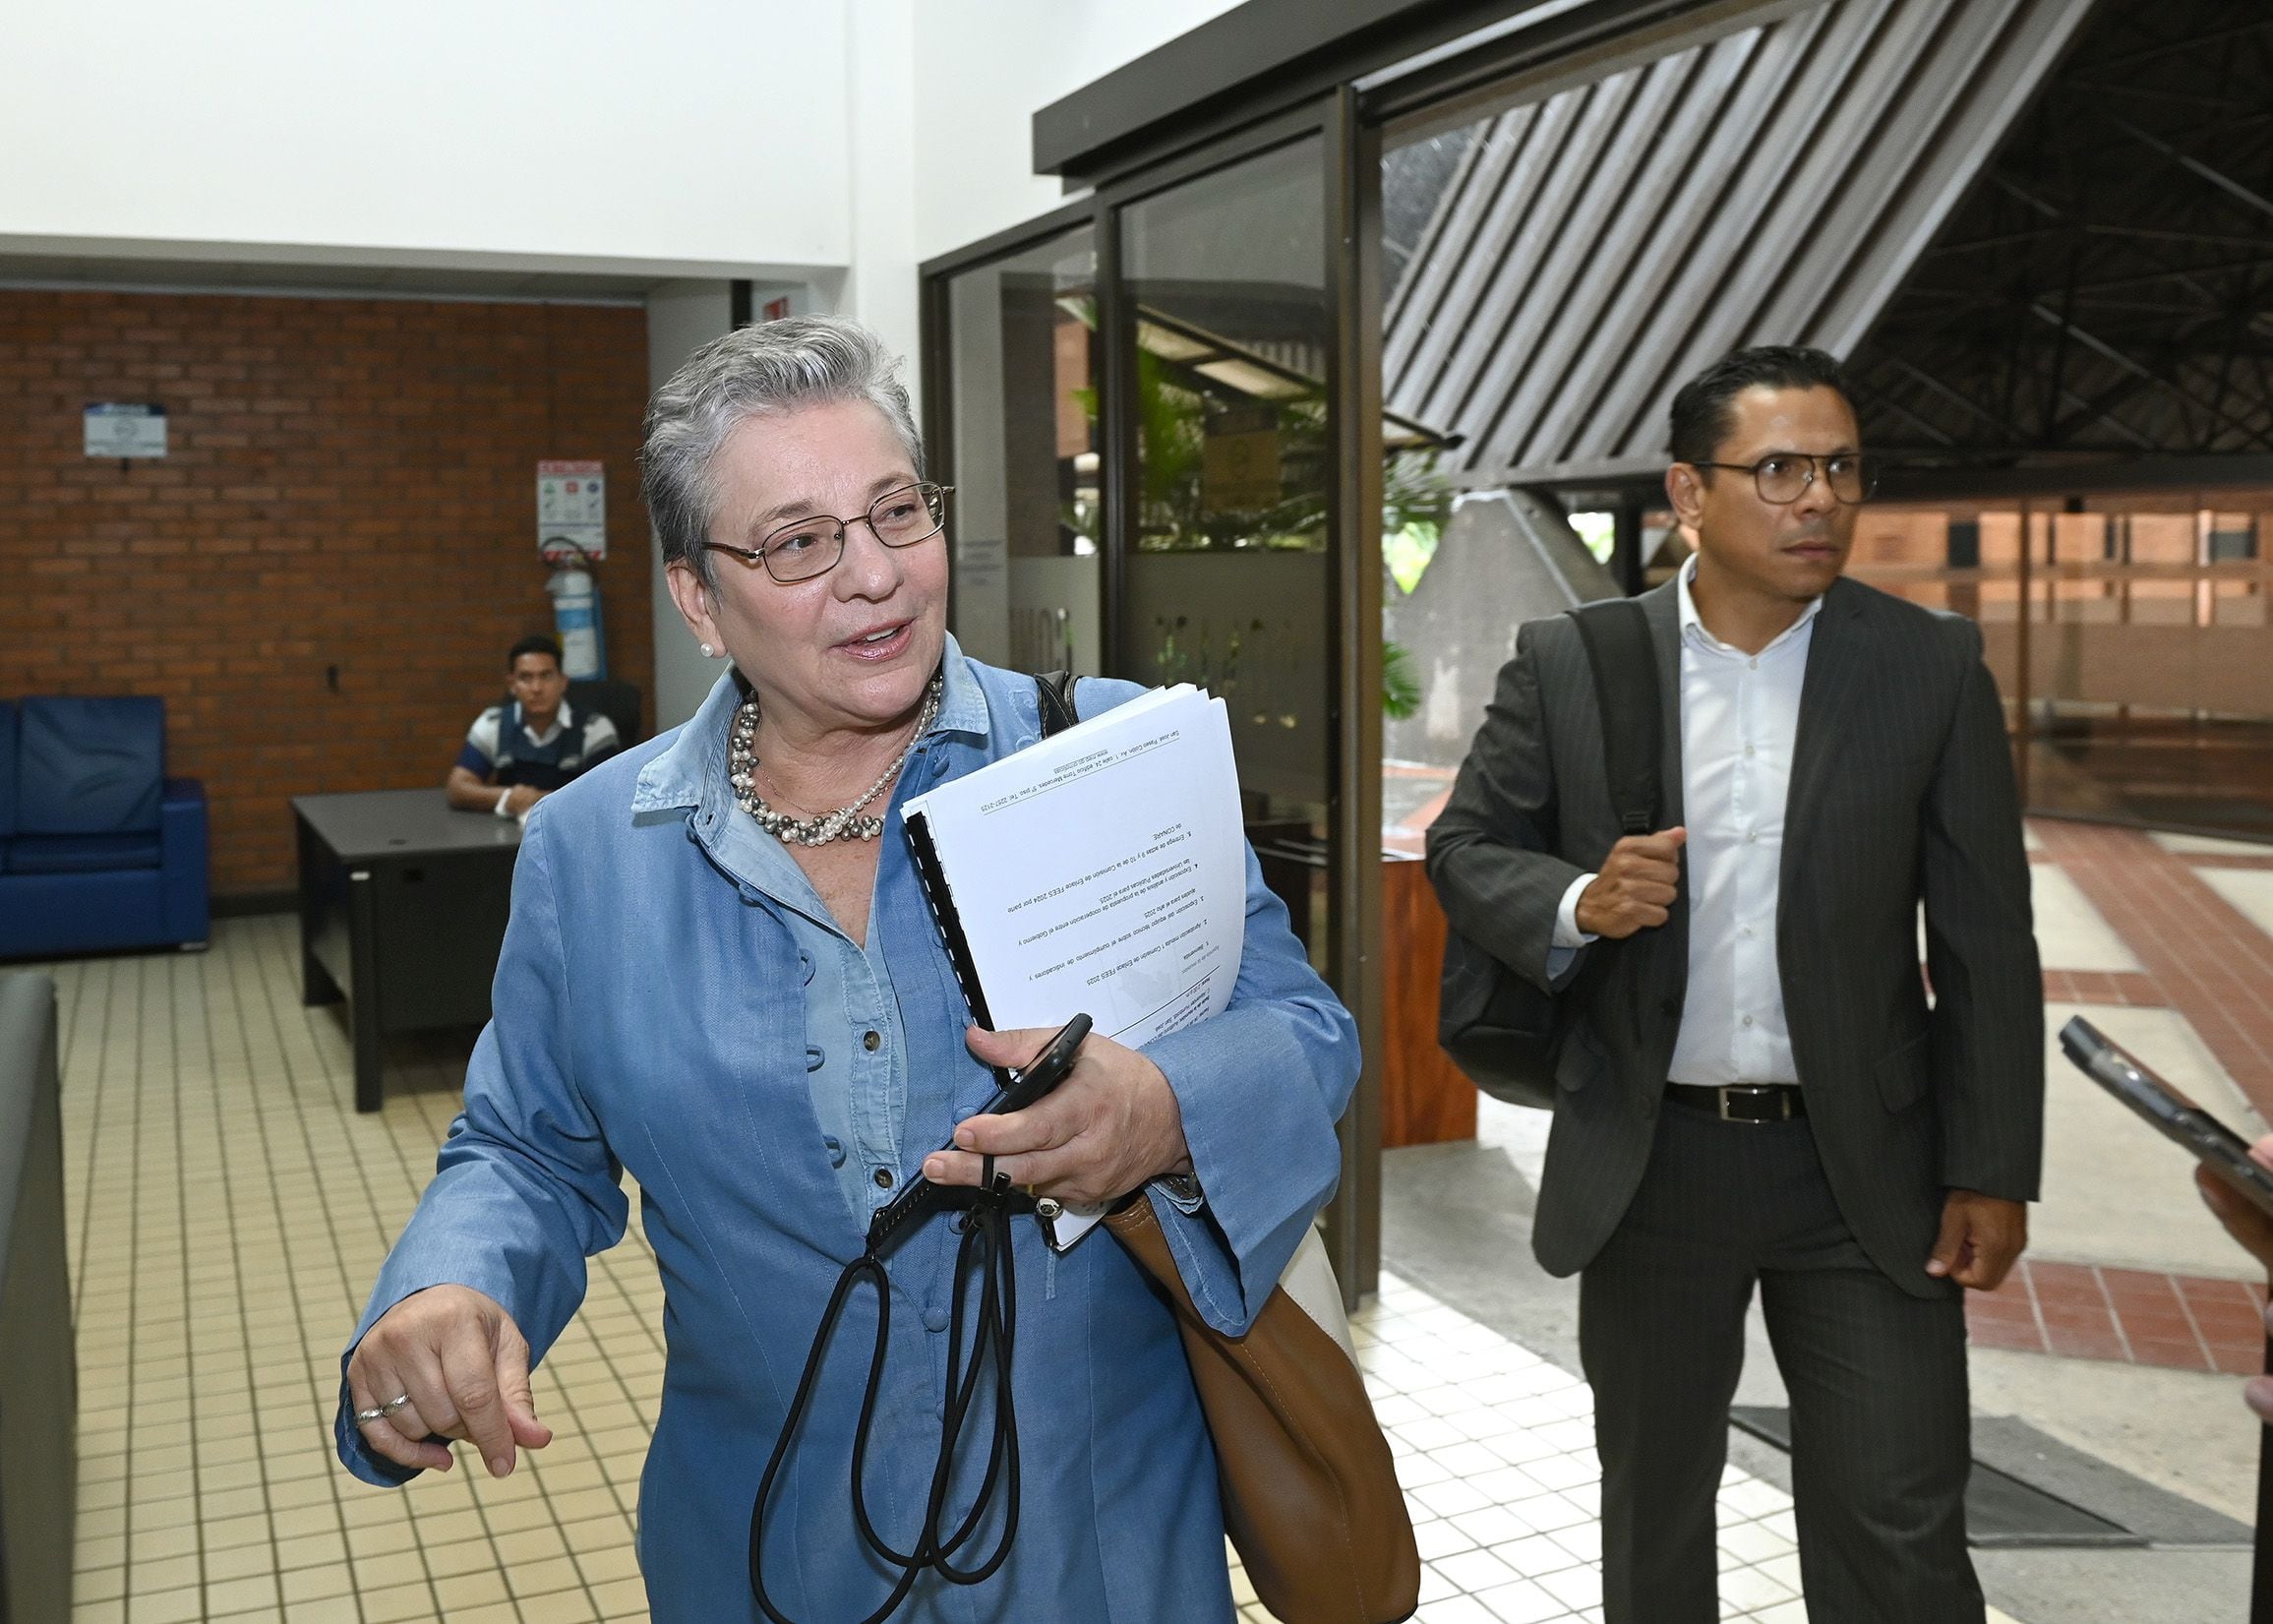 Anna Katharina Müller es la segunda ministra en la historia de Costa Rica en recibir un voto de censura. El primero fue Juan Diego Castro, en 1995, cuando dirigía el Ministerio de Seguridad. 